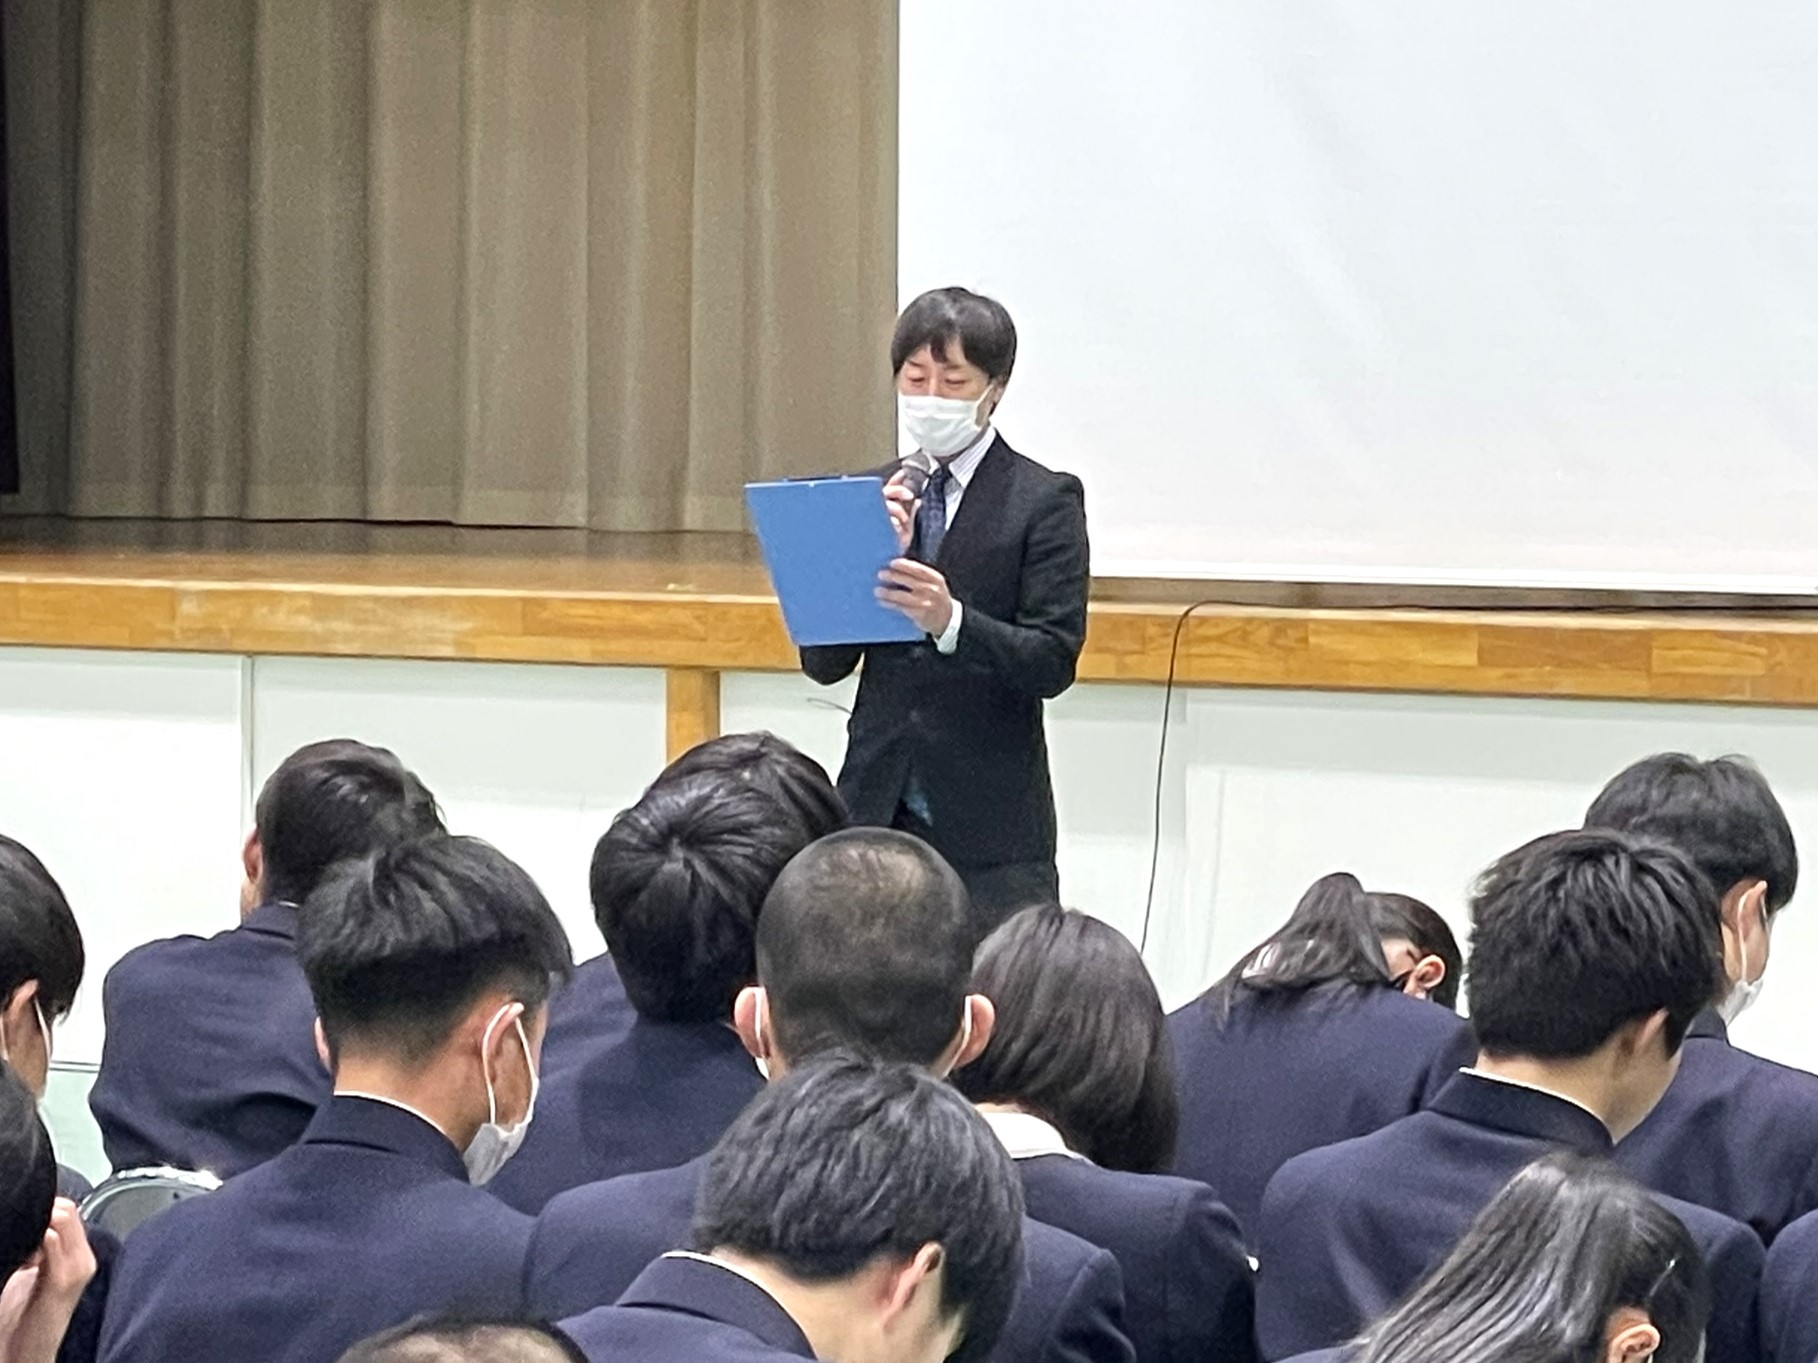 令和6年3月16日（土）、茂木高校で行われた「課題研究発表会」で、看護学部の荻原講師が指導助言者として参加しました。